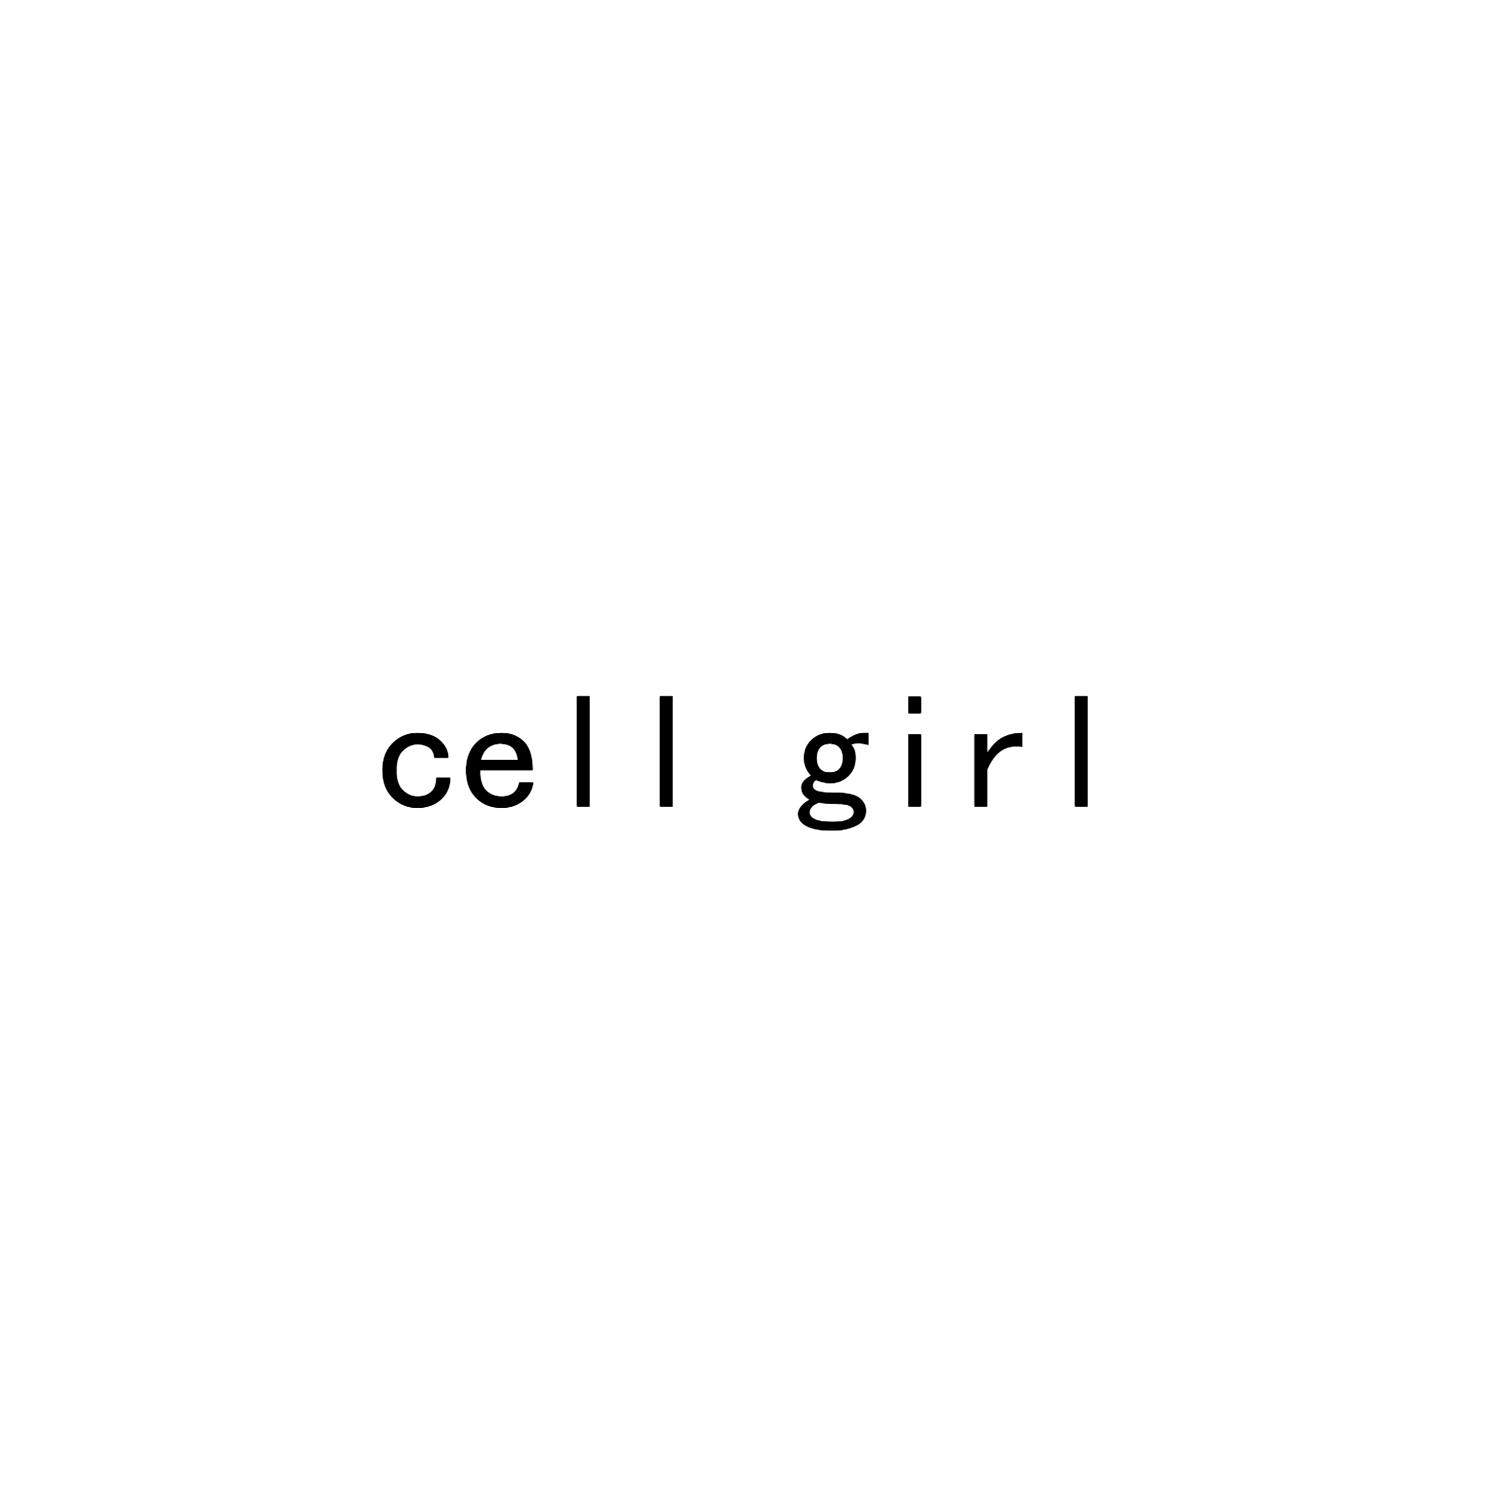 CELL GIRL